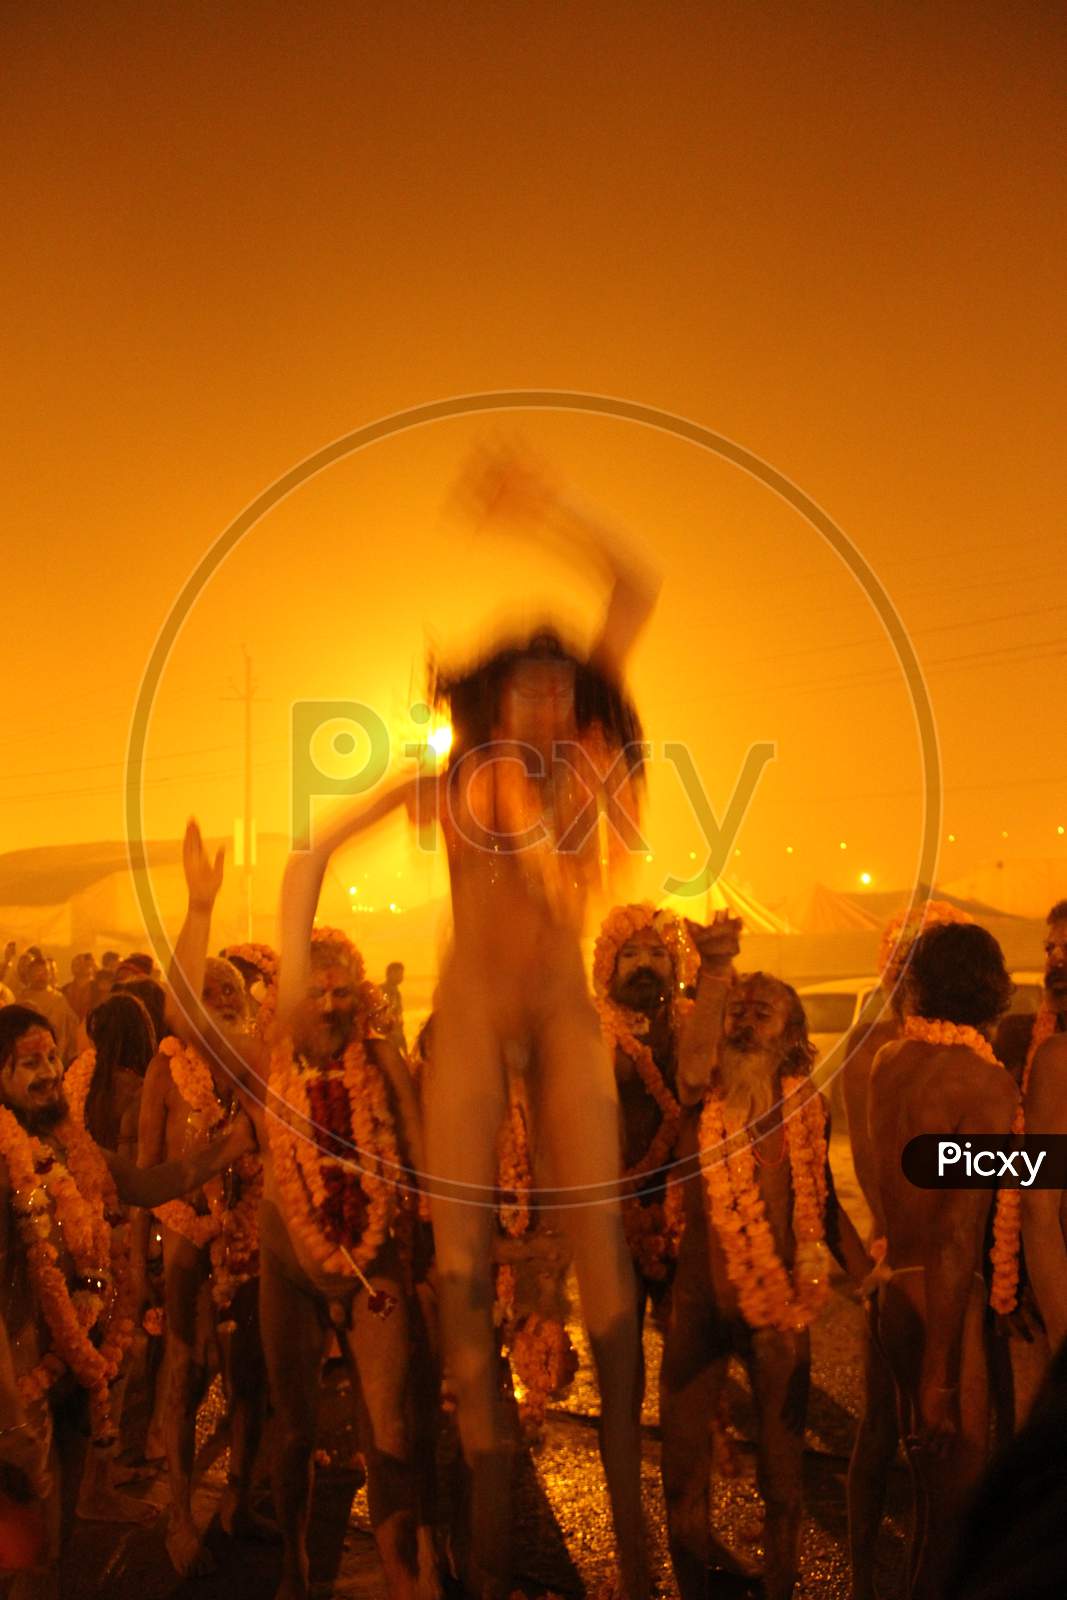 A Naga sadhu or a Hindu holy man stands during the "Shahi Snan" (grand bath) at "Kumbh Mela" in Allahabad, Uttar Pradesh, India.